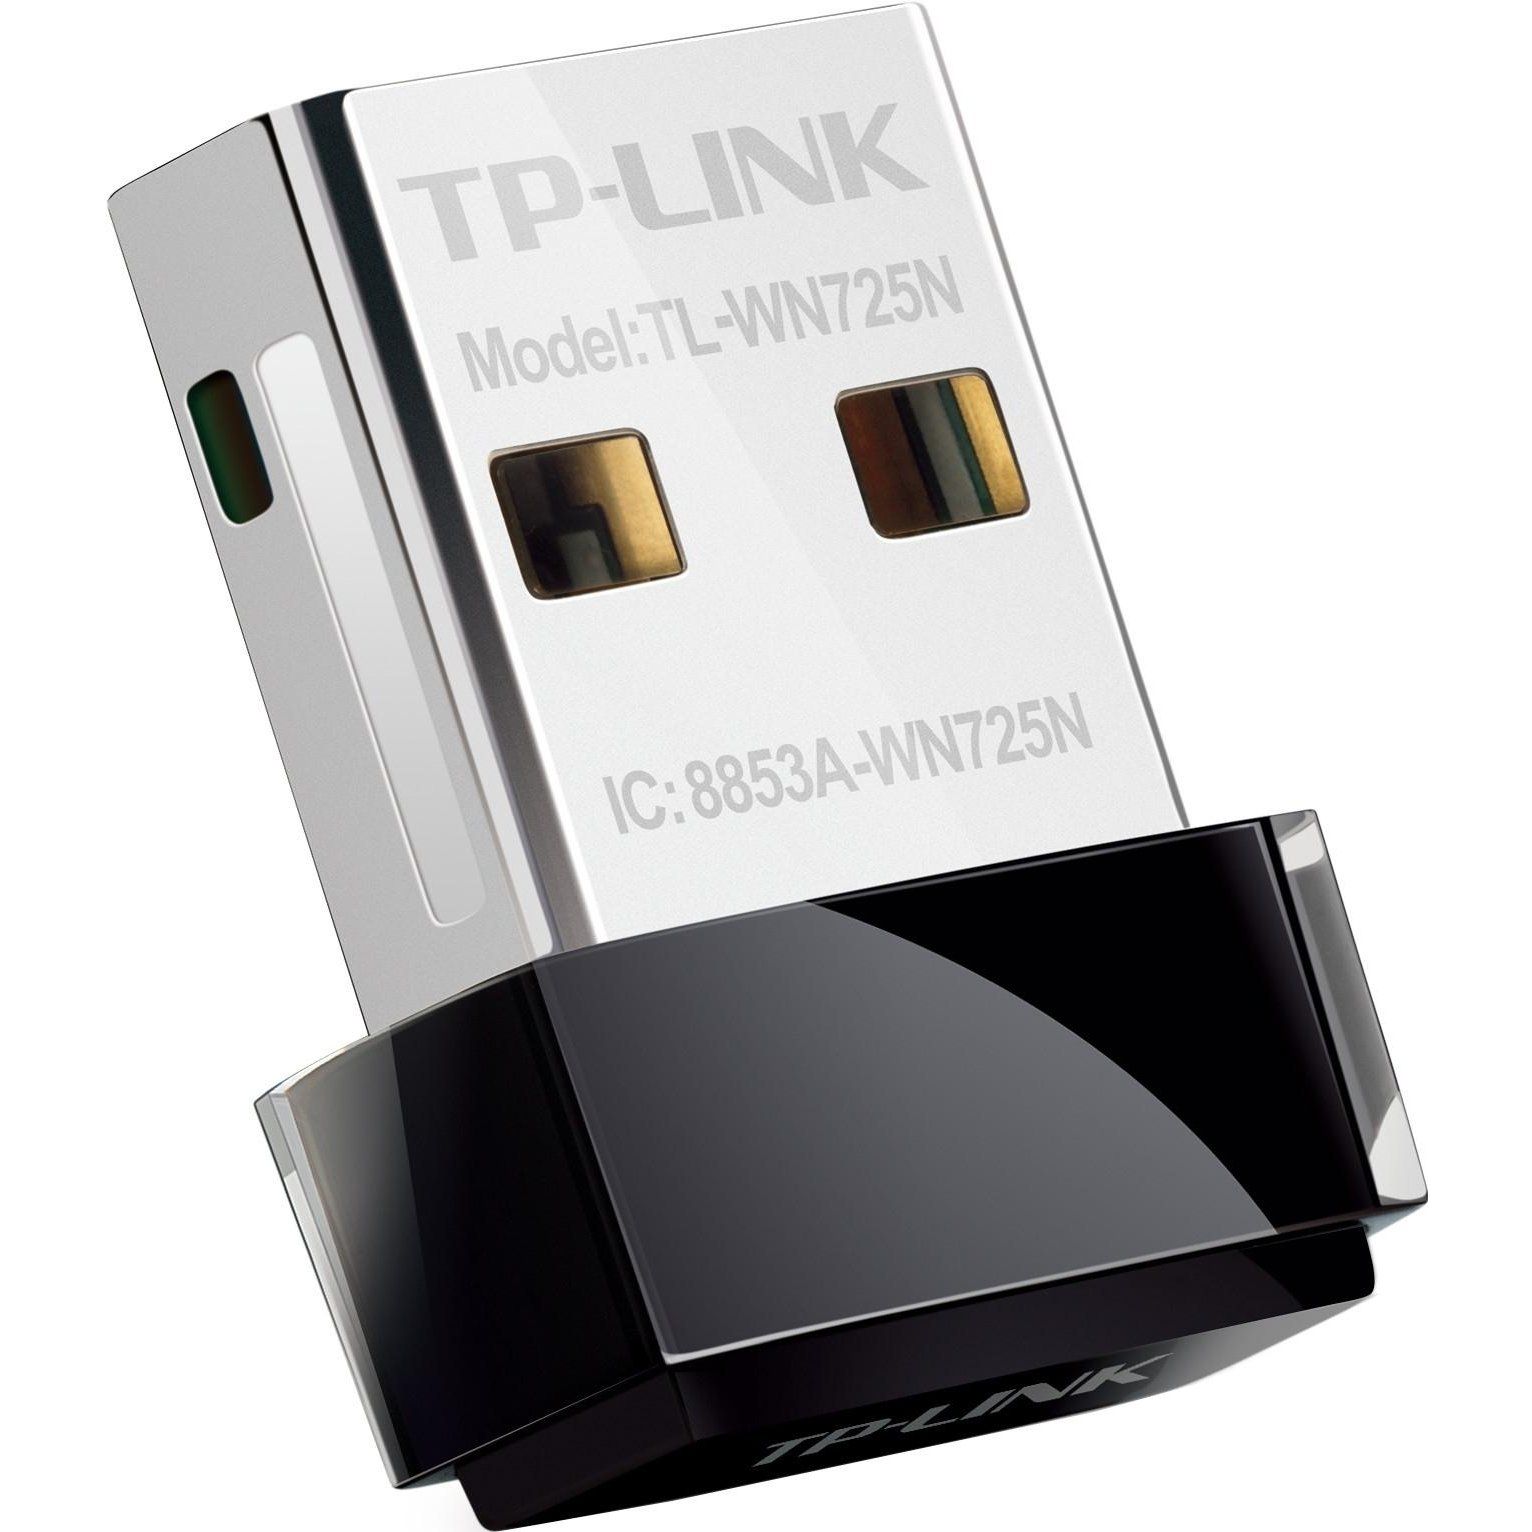 Адаптер tl wn725n. Wi-Fi адаптер TP-link TL-wn725n. Wi-Fi адаптер USB TP-link TL-wn725n USB 2.0. TP link USB WIFI адаптер. Wi-Fi адаптер TP-link Archer t1u.